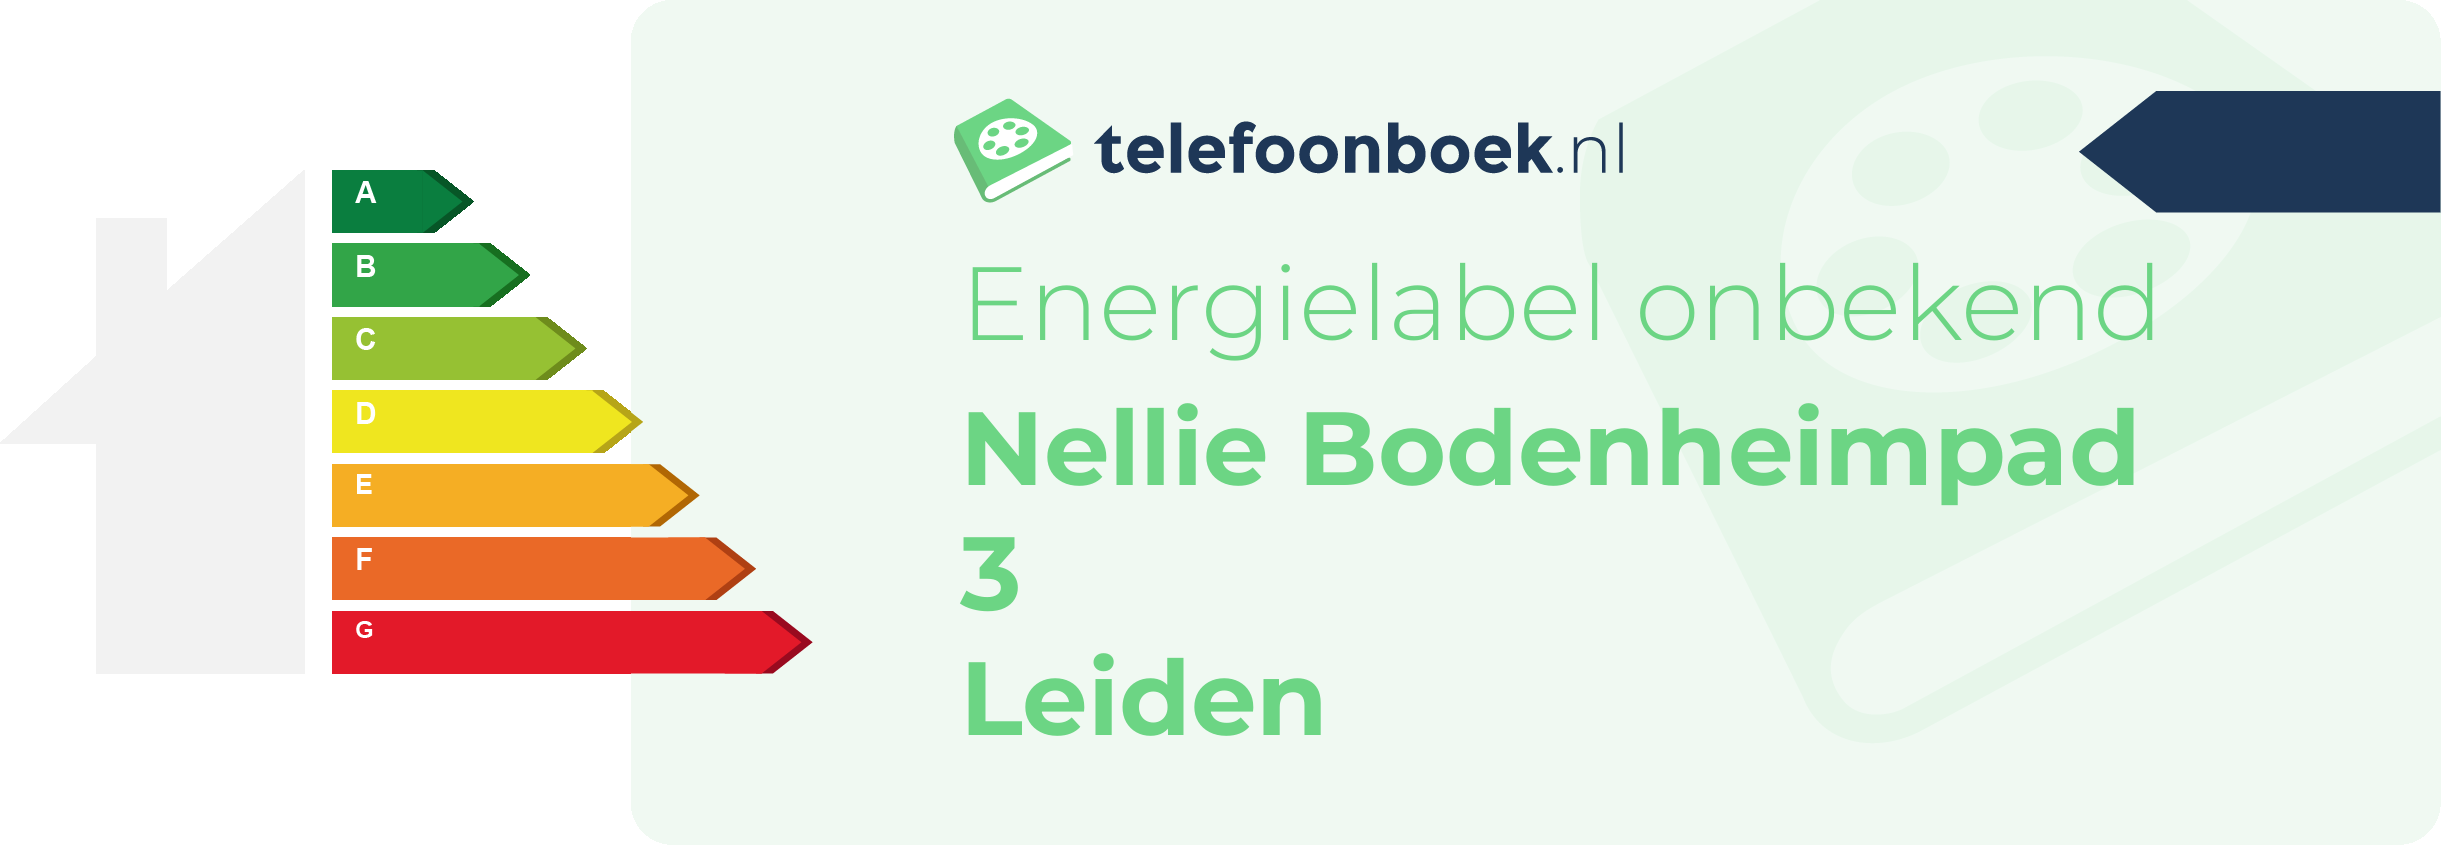 Energielabel Nellie Bodenheimpad 3 Leiden